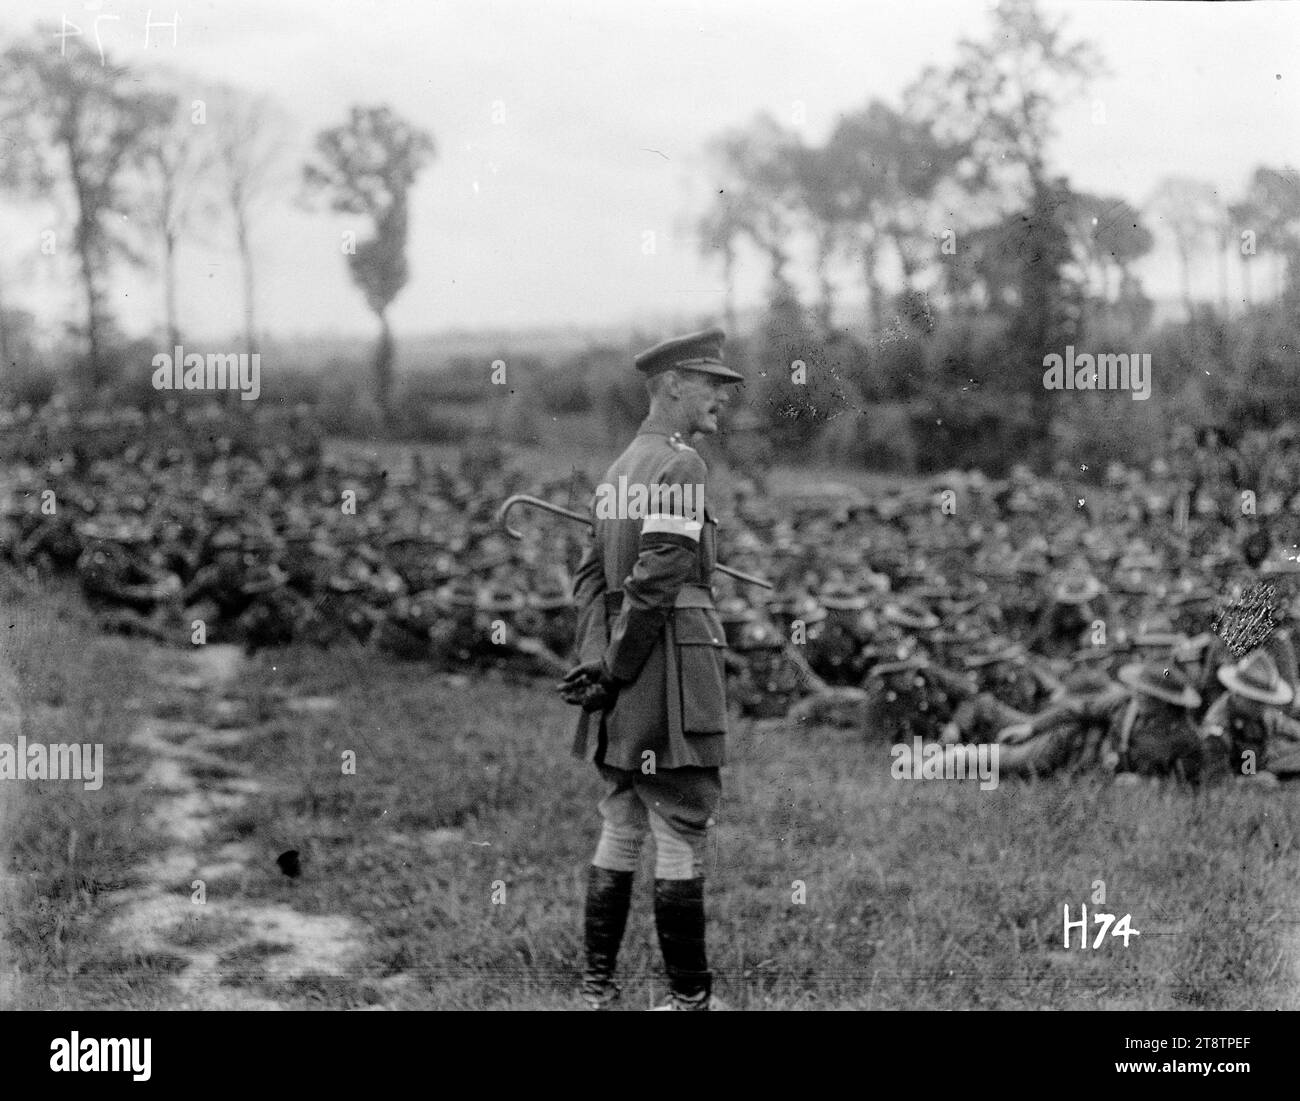 Il generale Godley si rivolge alle truppe dopo la battaglia di Messines, il generale Godley si congratula con i membri della 2nd Infantry Brigade per il loro successo nella battaglia di Messines in una recensione tenuta in seguito. Godley, in piedi al centro, si rivolge alle truppe sedute. Fotografia scattata il 21 giugno 1917 Foto Stock